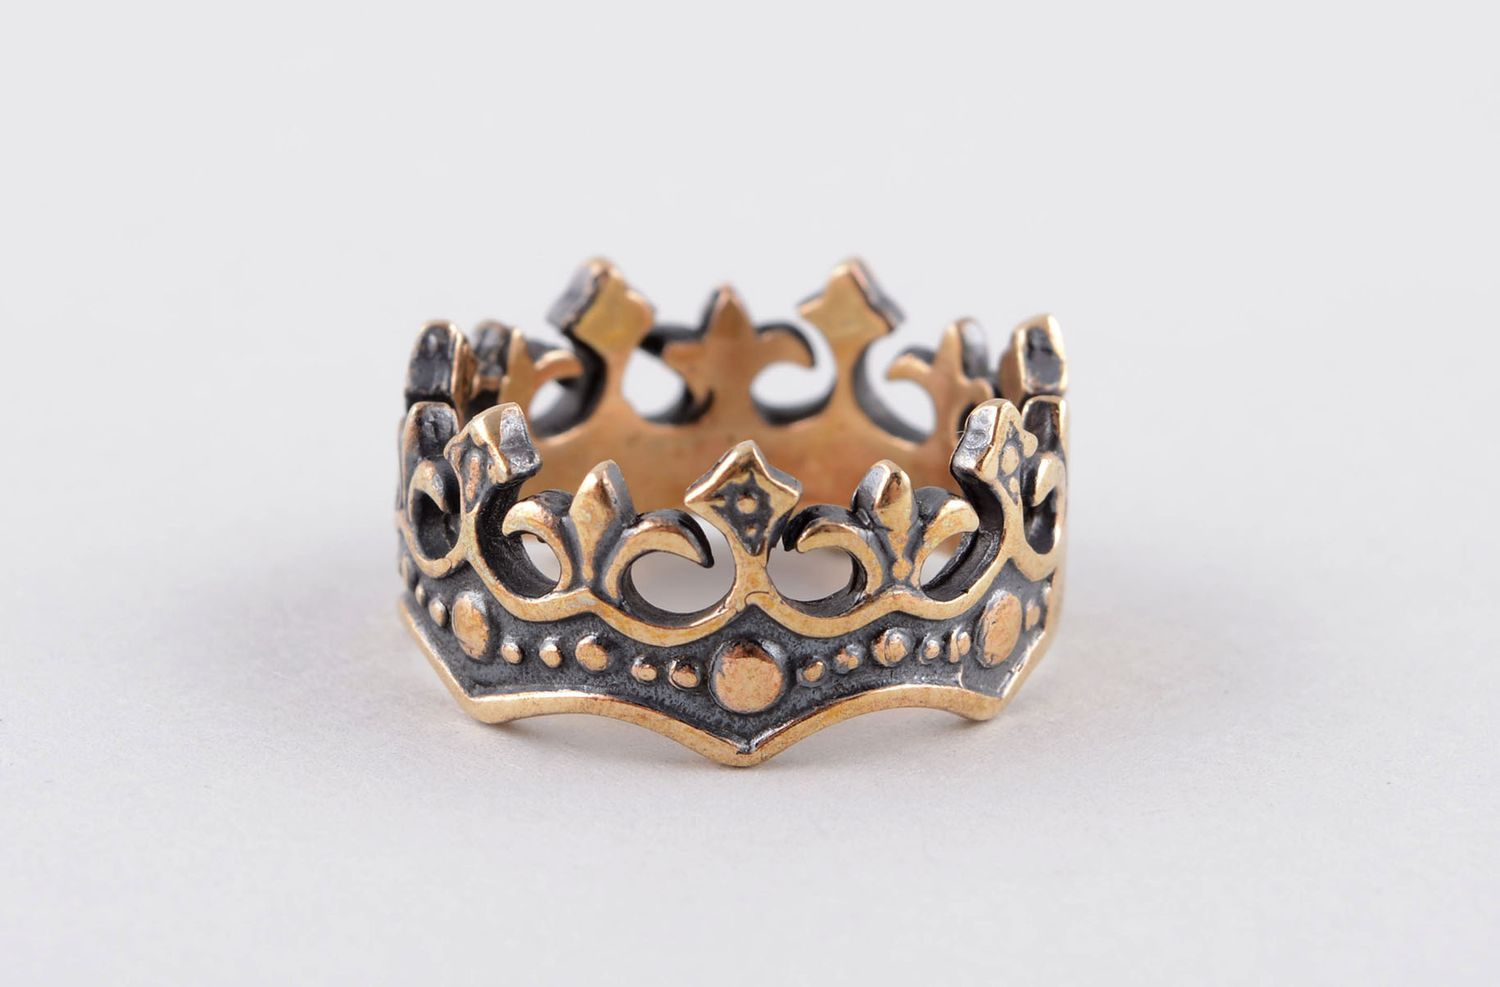 Handmade bronze ring bronze jewelry for women crown ring handmade jewelry photo 1